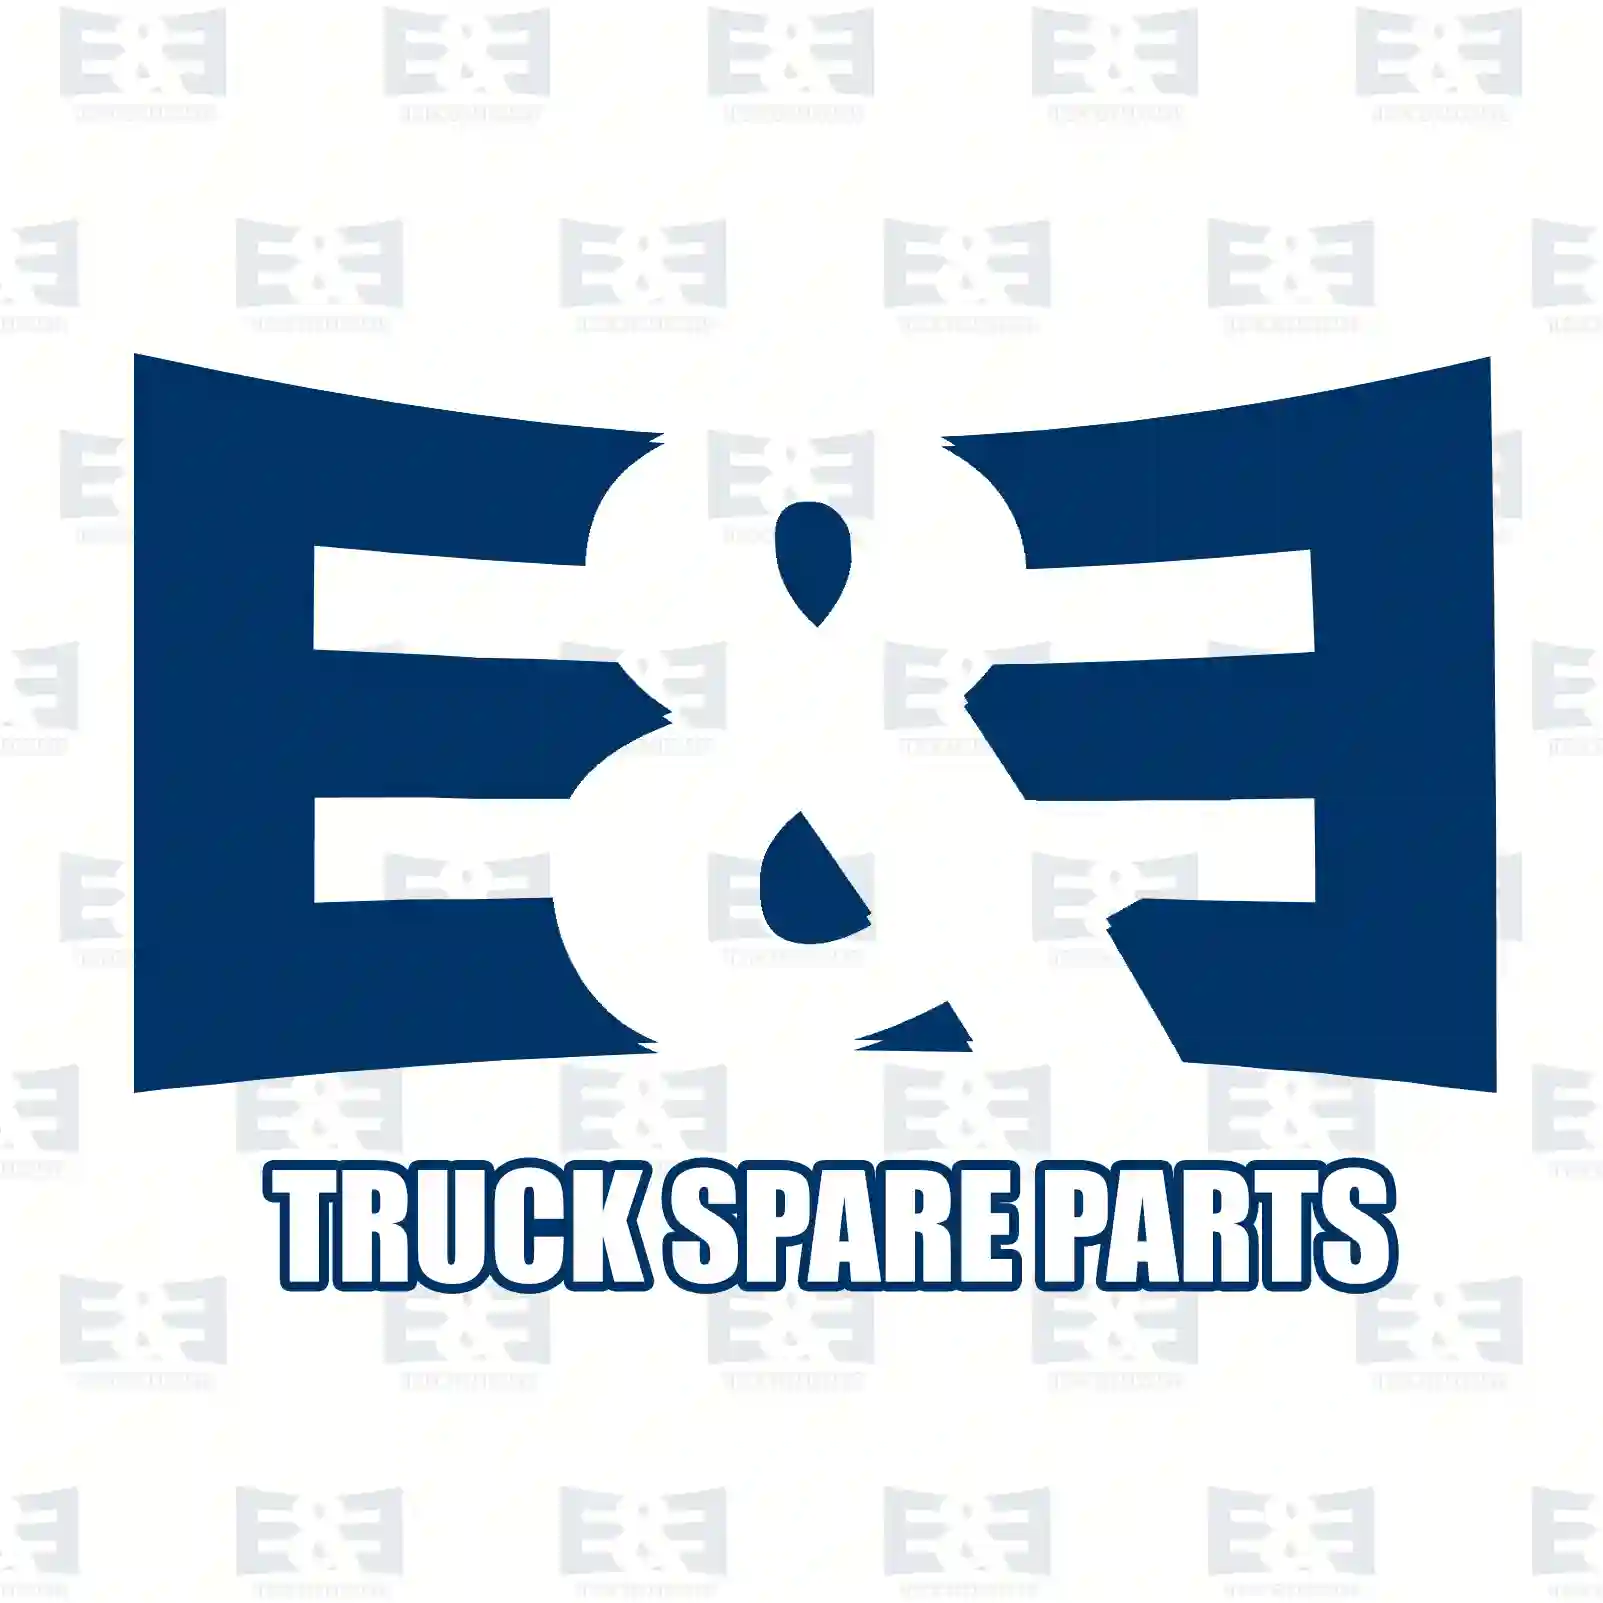 Fan clutch, 2E2201511, 51066300076, 51066300108, 51066300115 ||  2E2201511 E&E Truck Spare Parts | Truck Spare Parts, Auotomotive Spare Parts Fan clutch, 2E2201511, 51066300076, 51066300108, 51066300115 ||  2E2201511 E&E Truck Spare Parts | Truck Spare Parts, Auotomotive Spare Parts